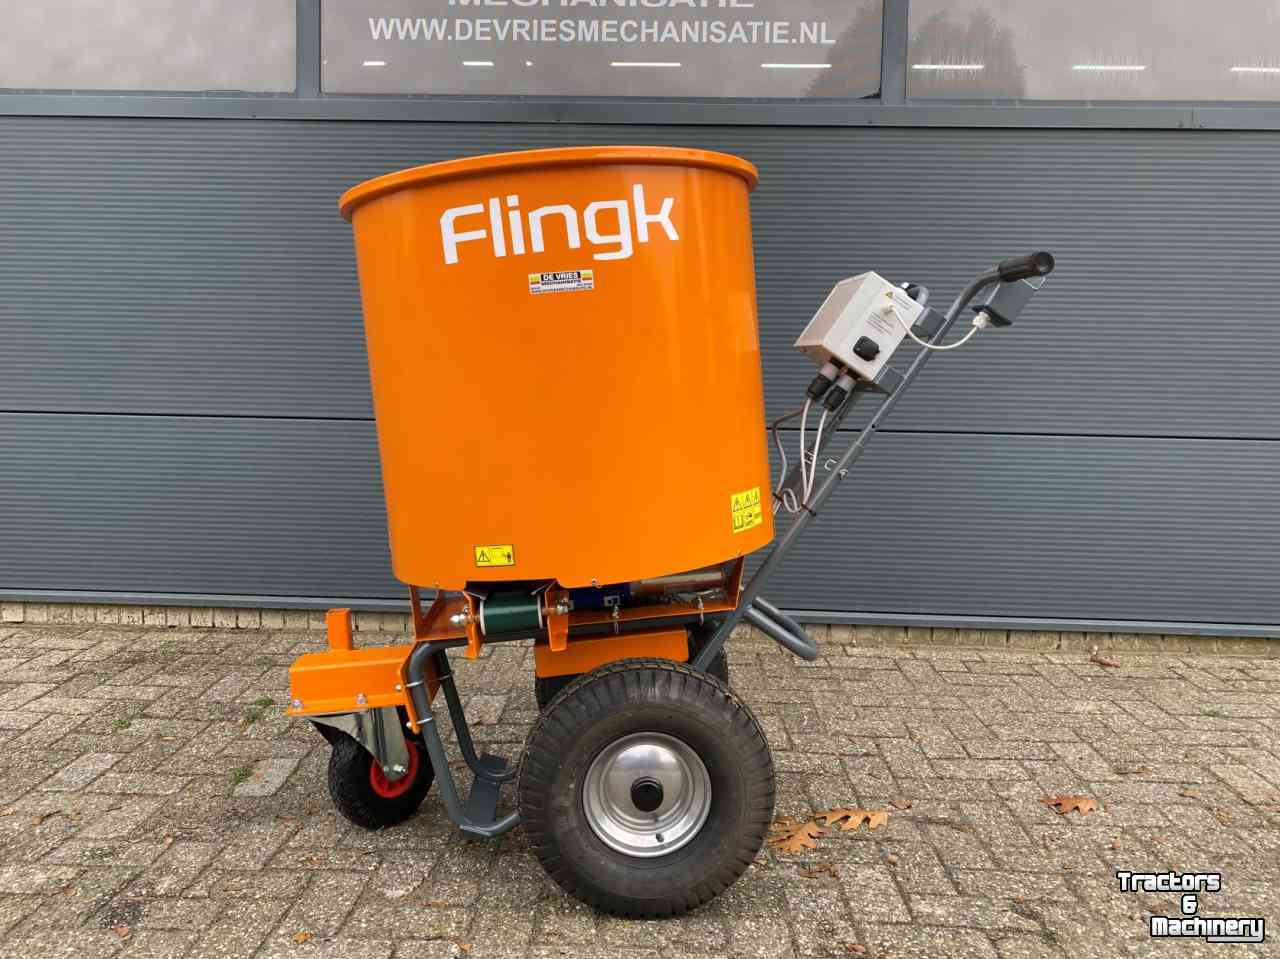 Sawdust spreader for boxes Flingk SE 250